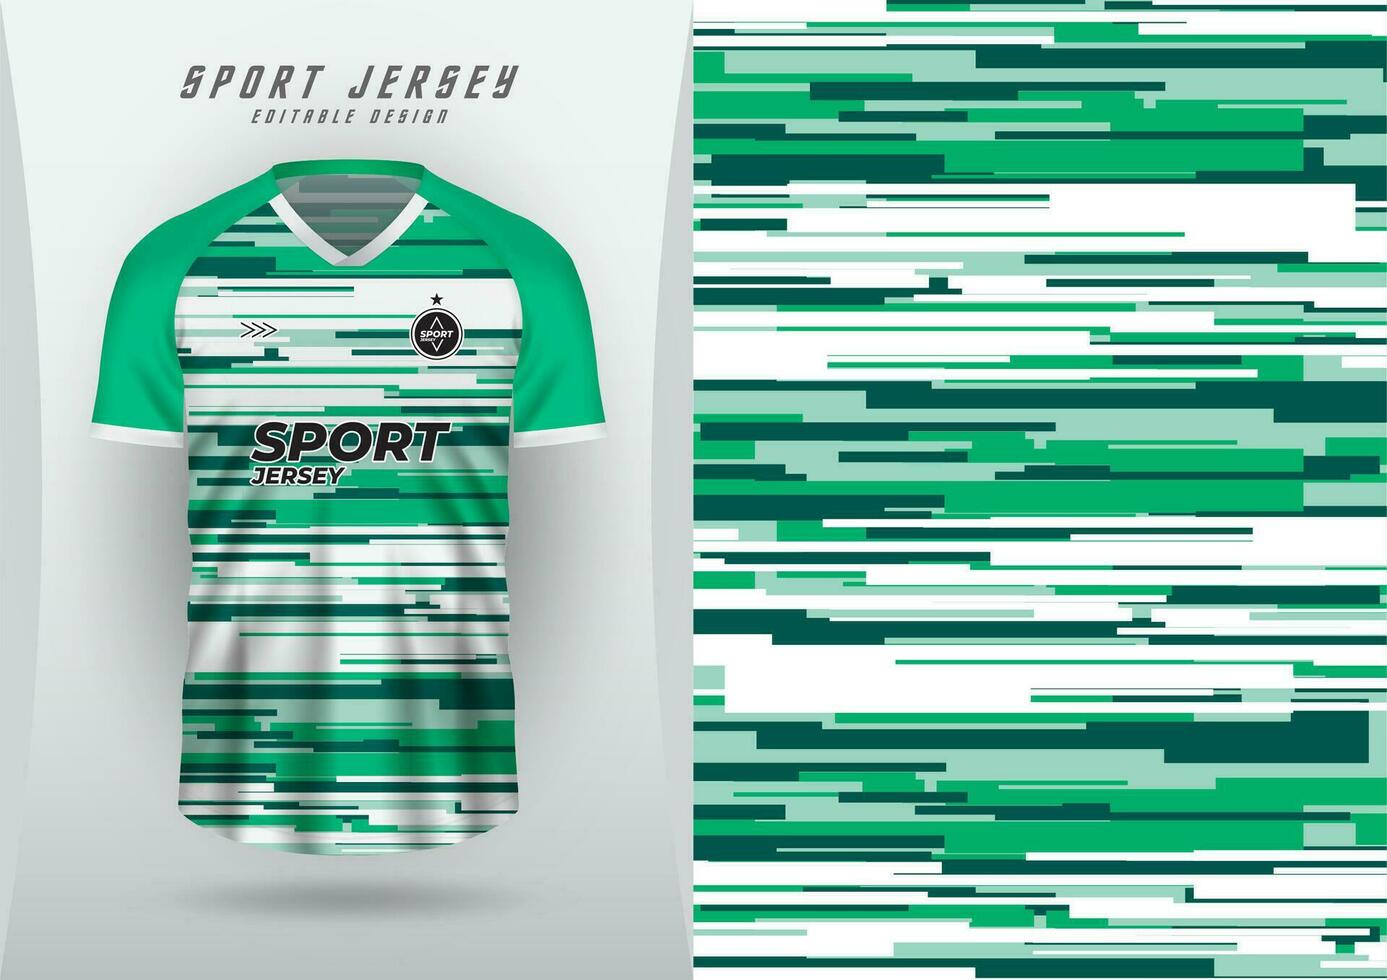 Hintergrund zum Sport, Jersey, Fußball, Laufen Jersey, Rennen Jersey, Radfahren, Muster, klein Gerade Quadrate, dunkel Grün, Licht Grün und Weiß. vektor